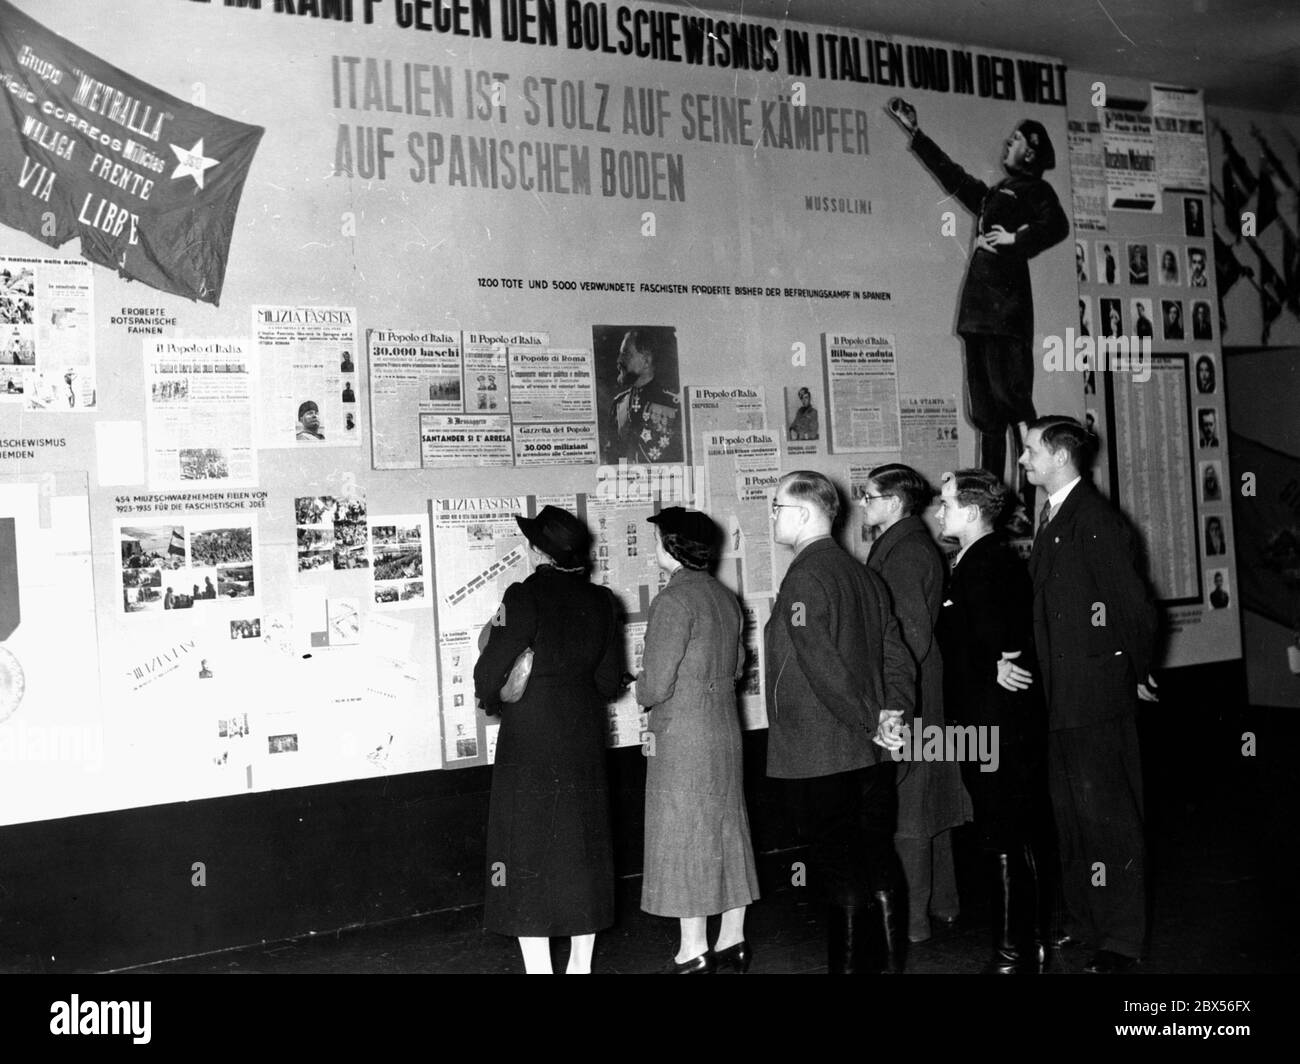 Blick auf die italienische Sektion der antibolschewistischen Ausstellung im Reichstag mit dem Titel "Bolschewismus ohne Maske". Stockfoto